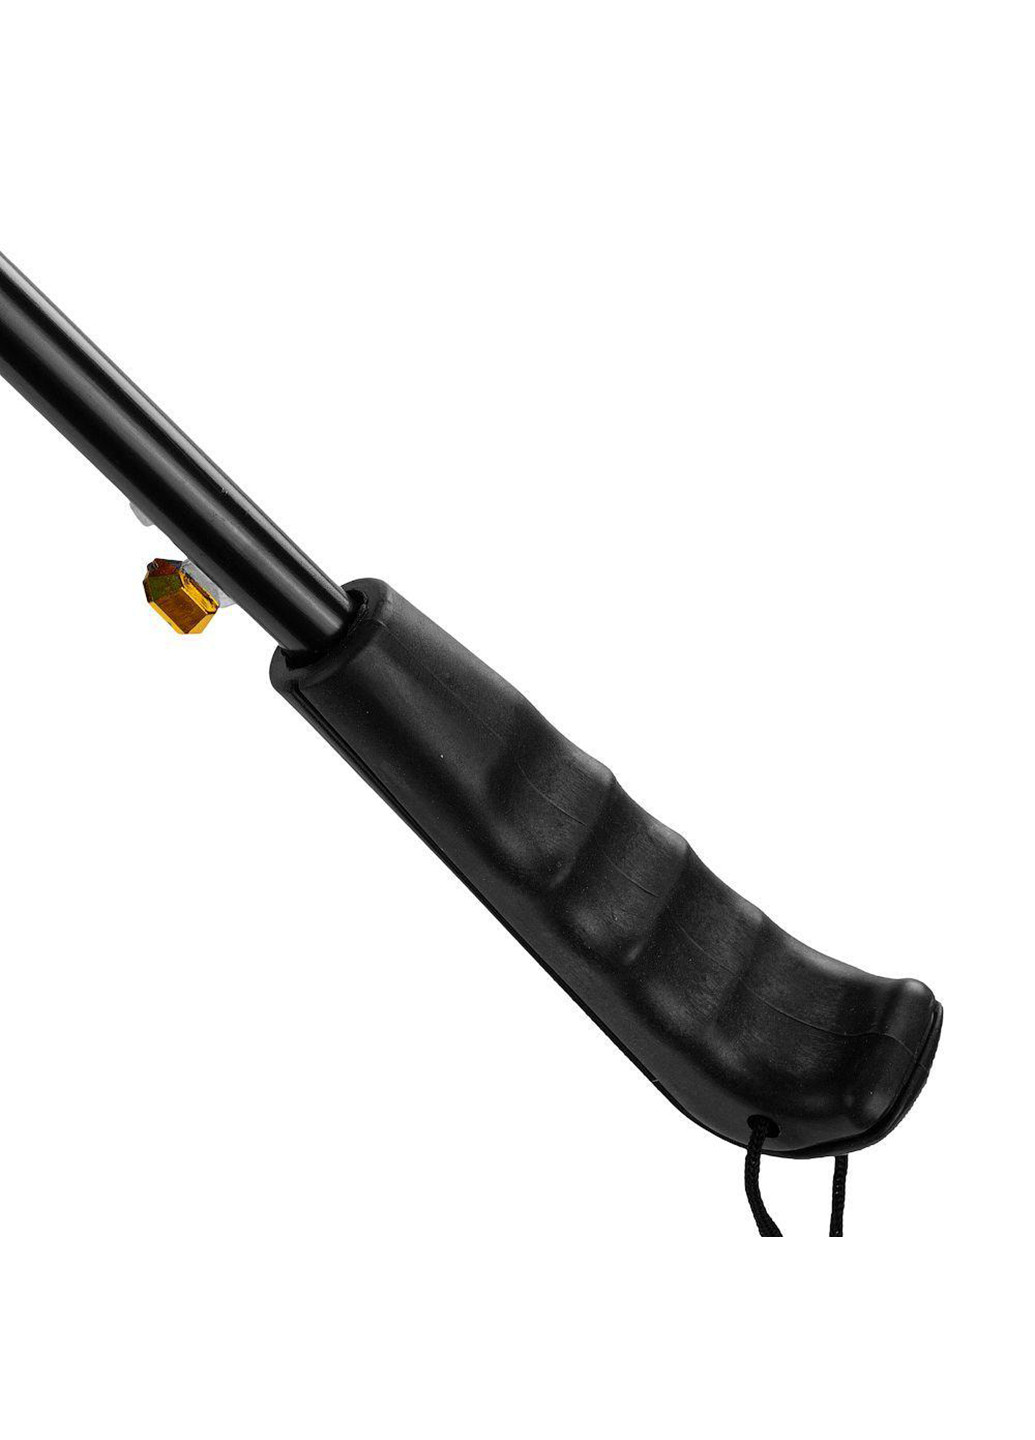 Мужской зонт-трость полуавтомат 97 см Eterno (255709158)